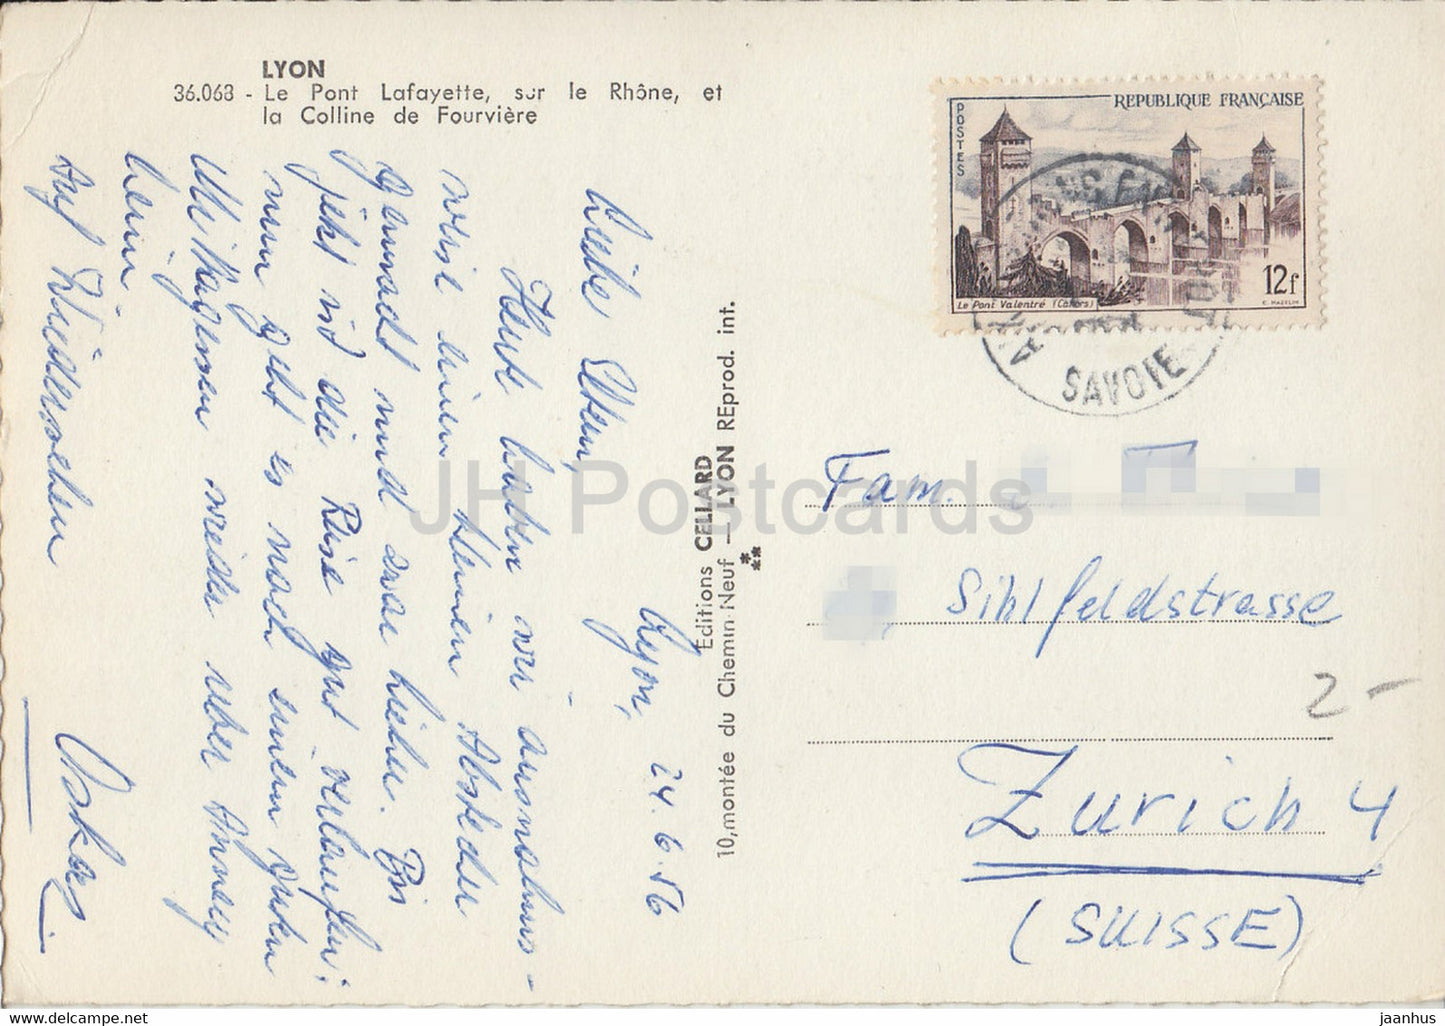 Lyon - Le Pont Lafayette sur le Rhône et la Colline de Fourvière - pont - tramway - carte postale ancienne - 1956 - France - occasion